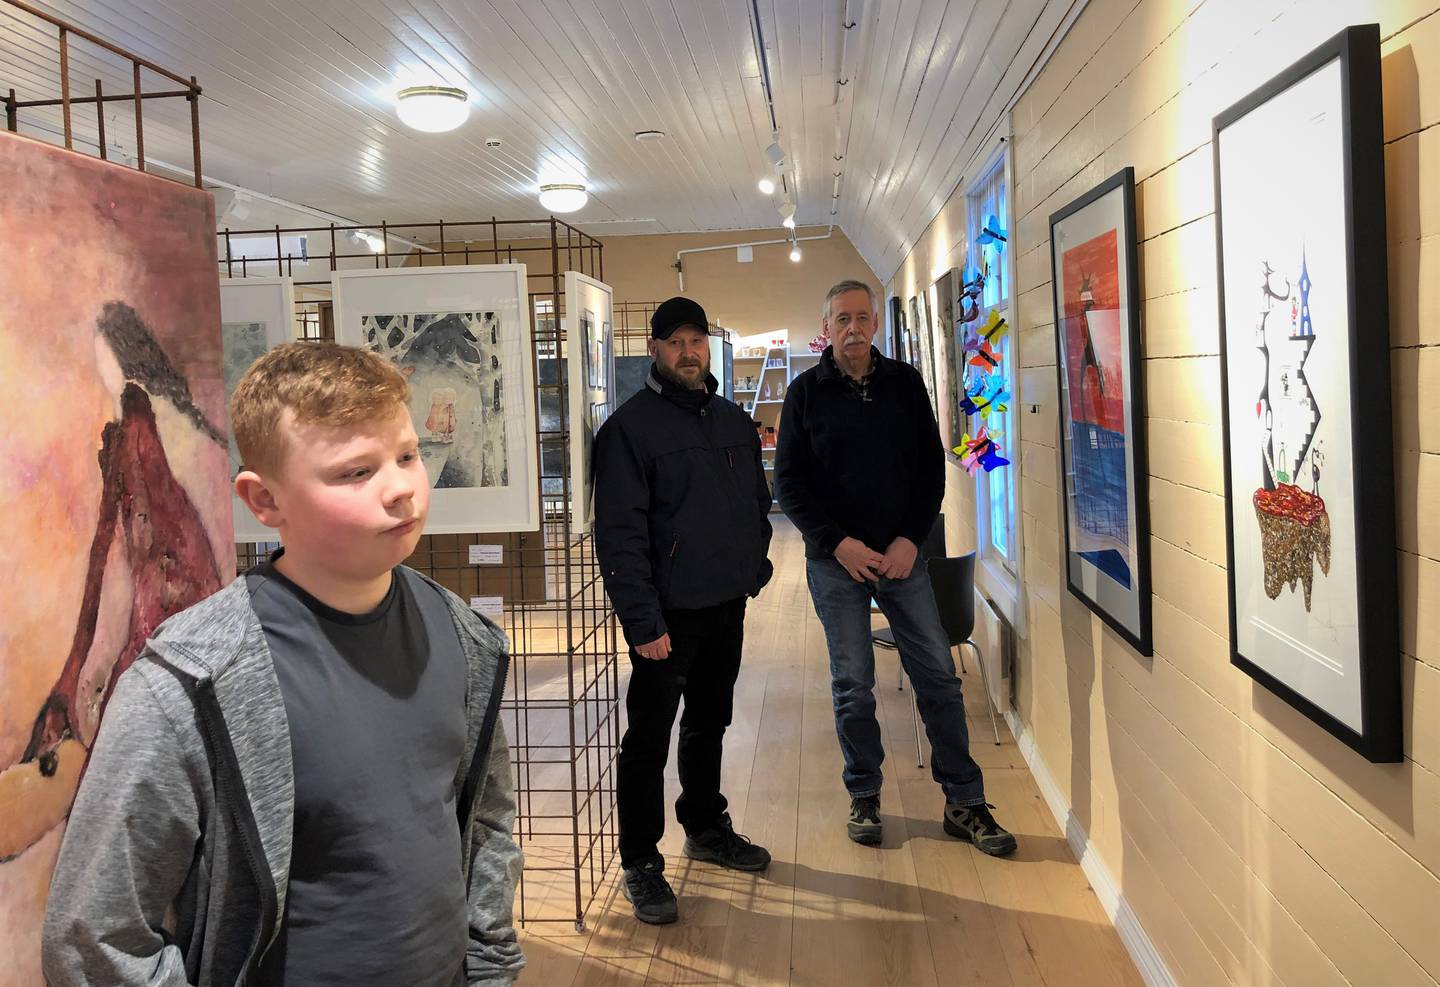 Jonas Søderlund Berg (12) har kontrakt med Galleri 1845 ut mars og er den yngste utstilleren galleriet i Gamlebyen har hatt til nå. Bak: Pappa Thomas Berg og medeier Øivind Aronsen i galleriet.